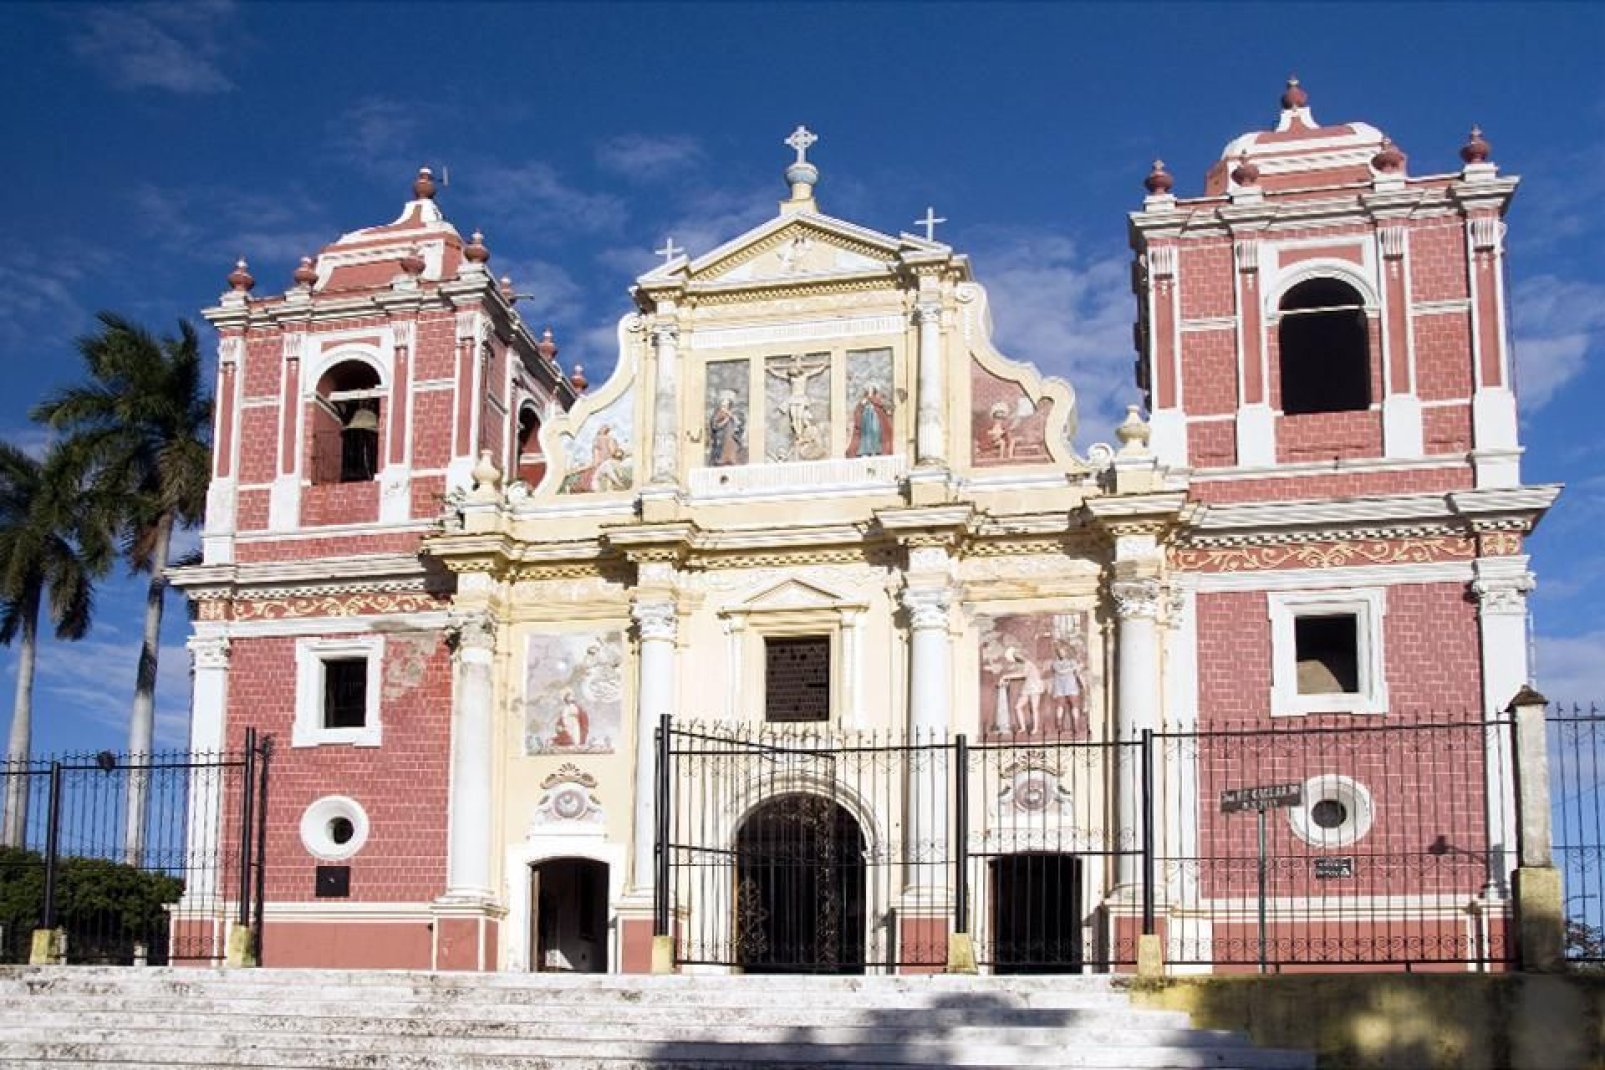 Diese Kirche aus dem Jahre 1810 ist für ihre Skulpturen und die Fassade in einer Mischung aus spanischem und französischem Kolonialstil bekannt.